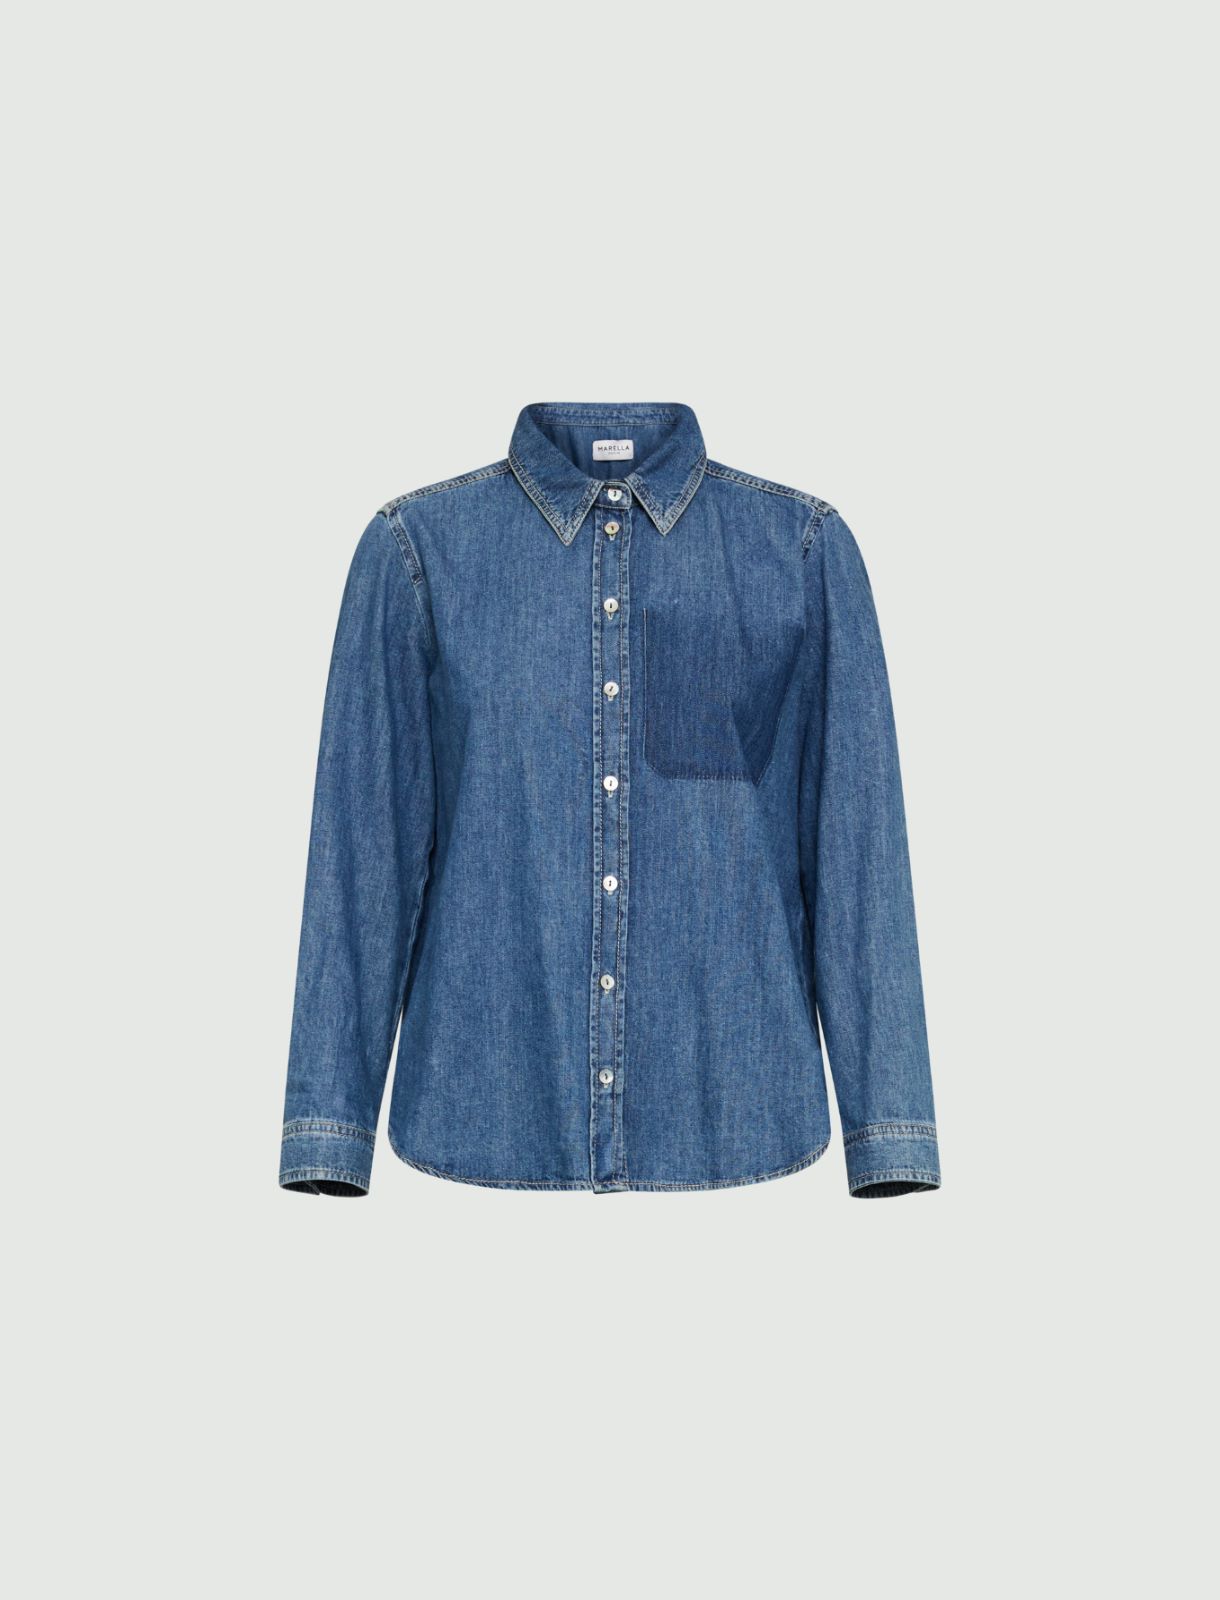 Denim shirt - Blue jeans - Marina Rinaldi - 5